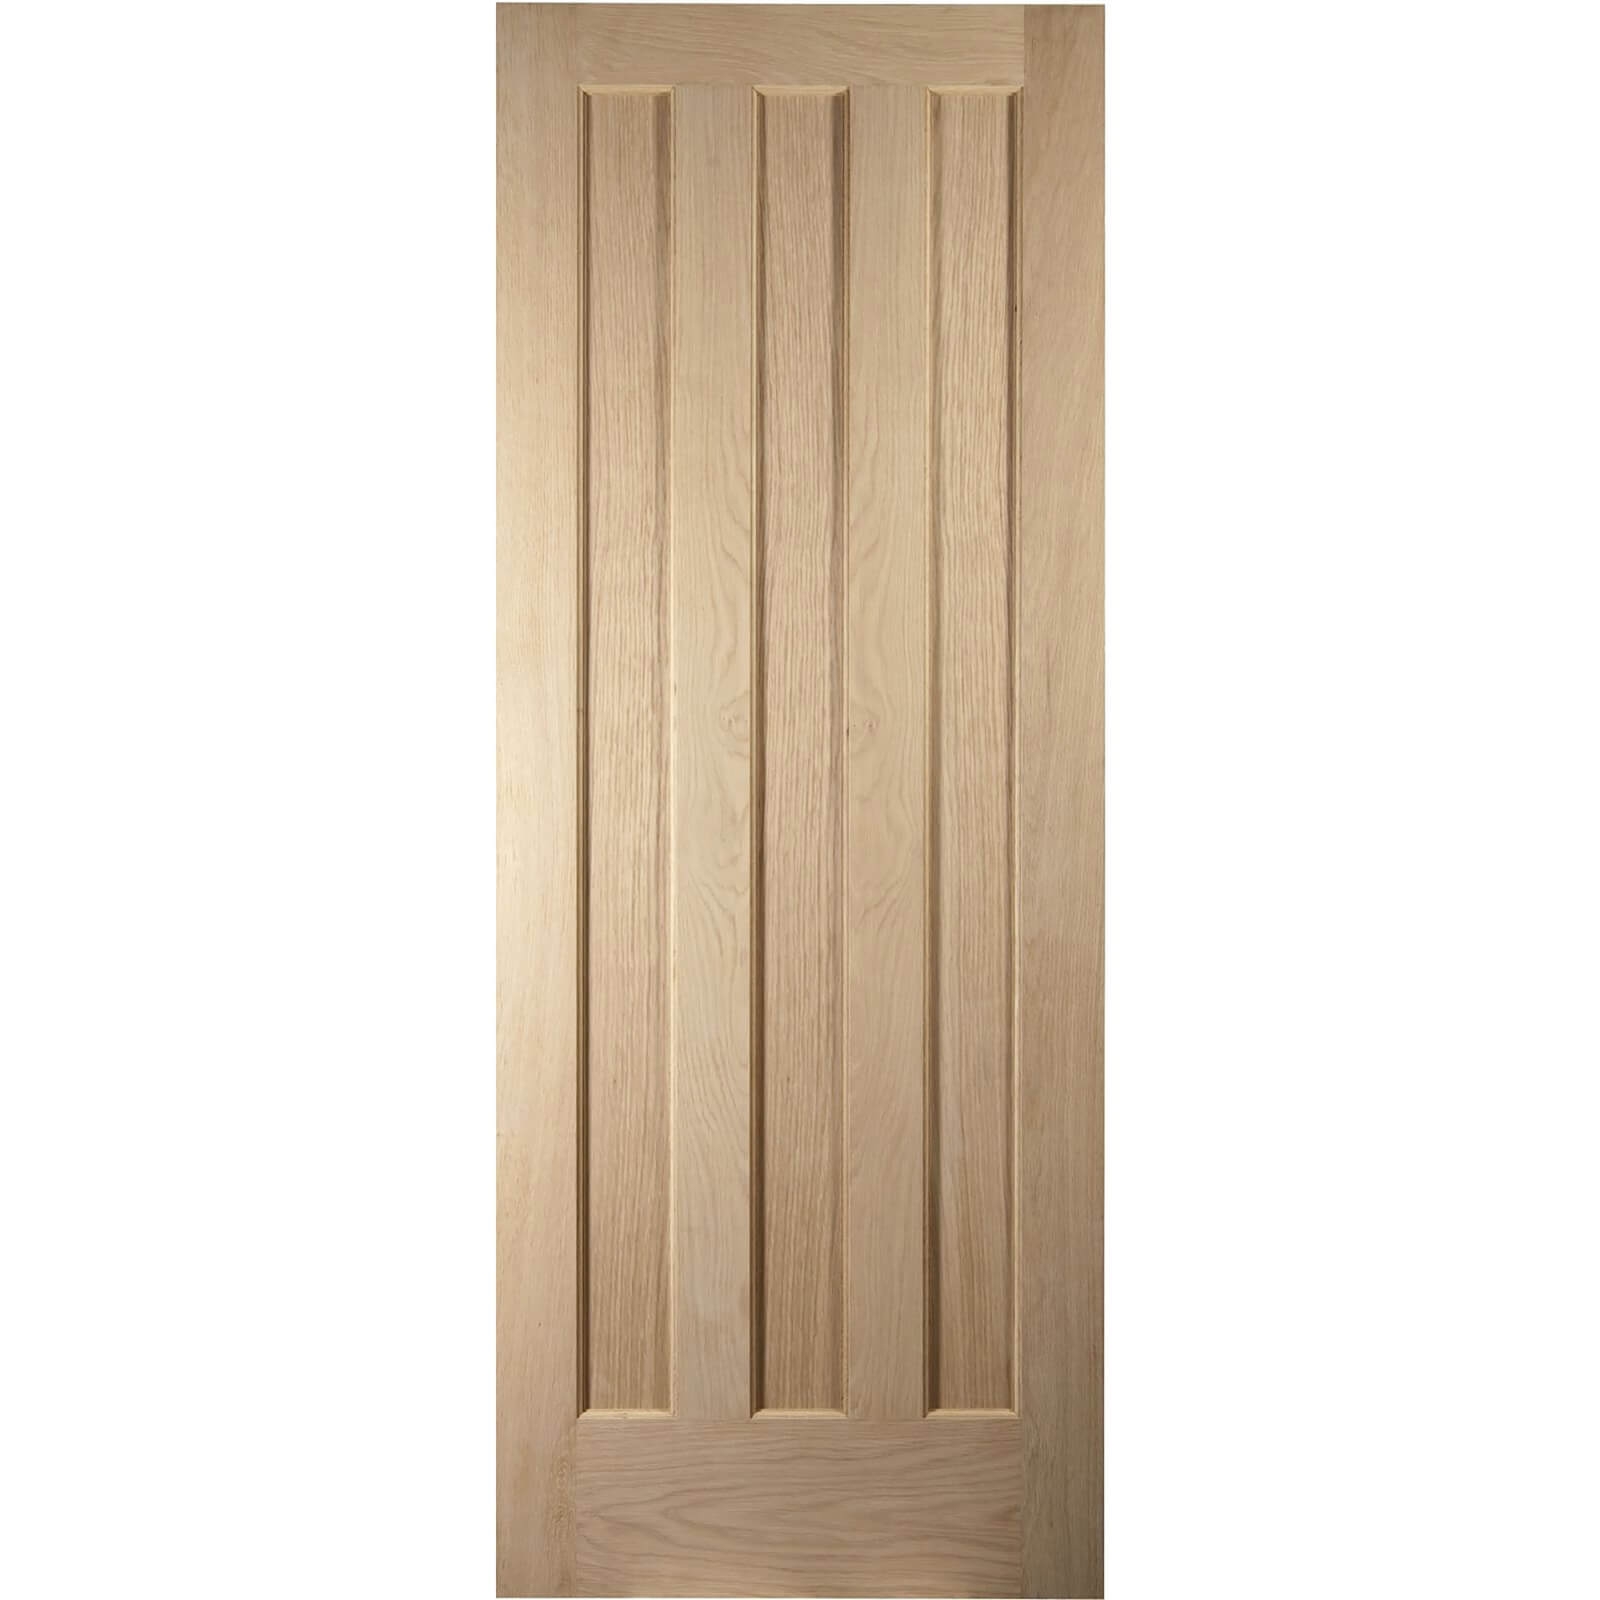 Aston 3 Panel White Oak Veneer Internal Door - 826mm Wide